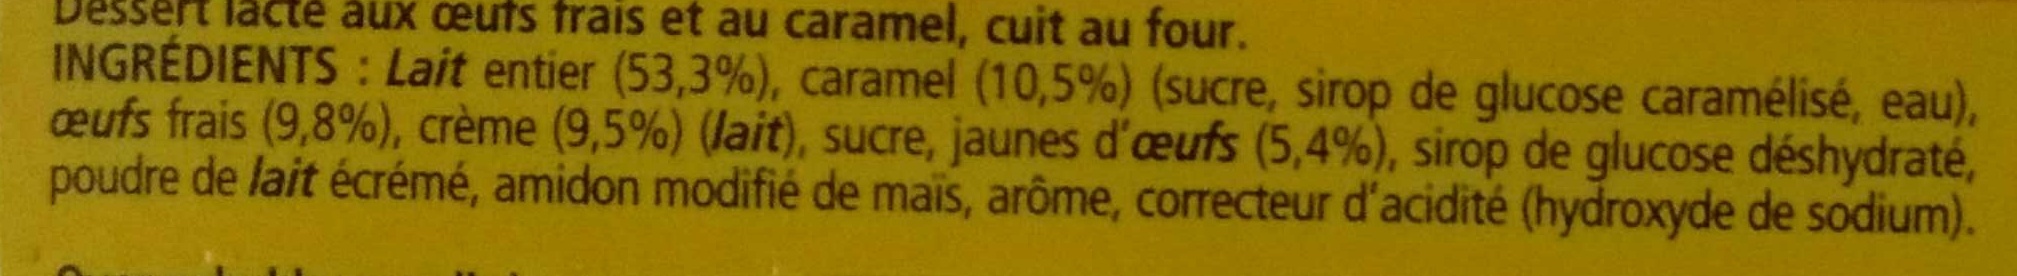 Le Petit Pot de Crème au Caramel (Offre Découverte) 4 Pots - 成分 - fr